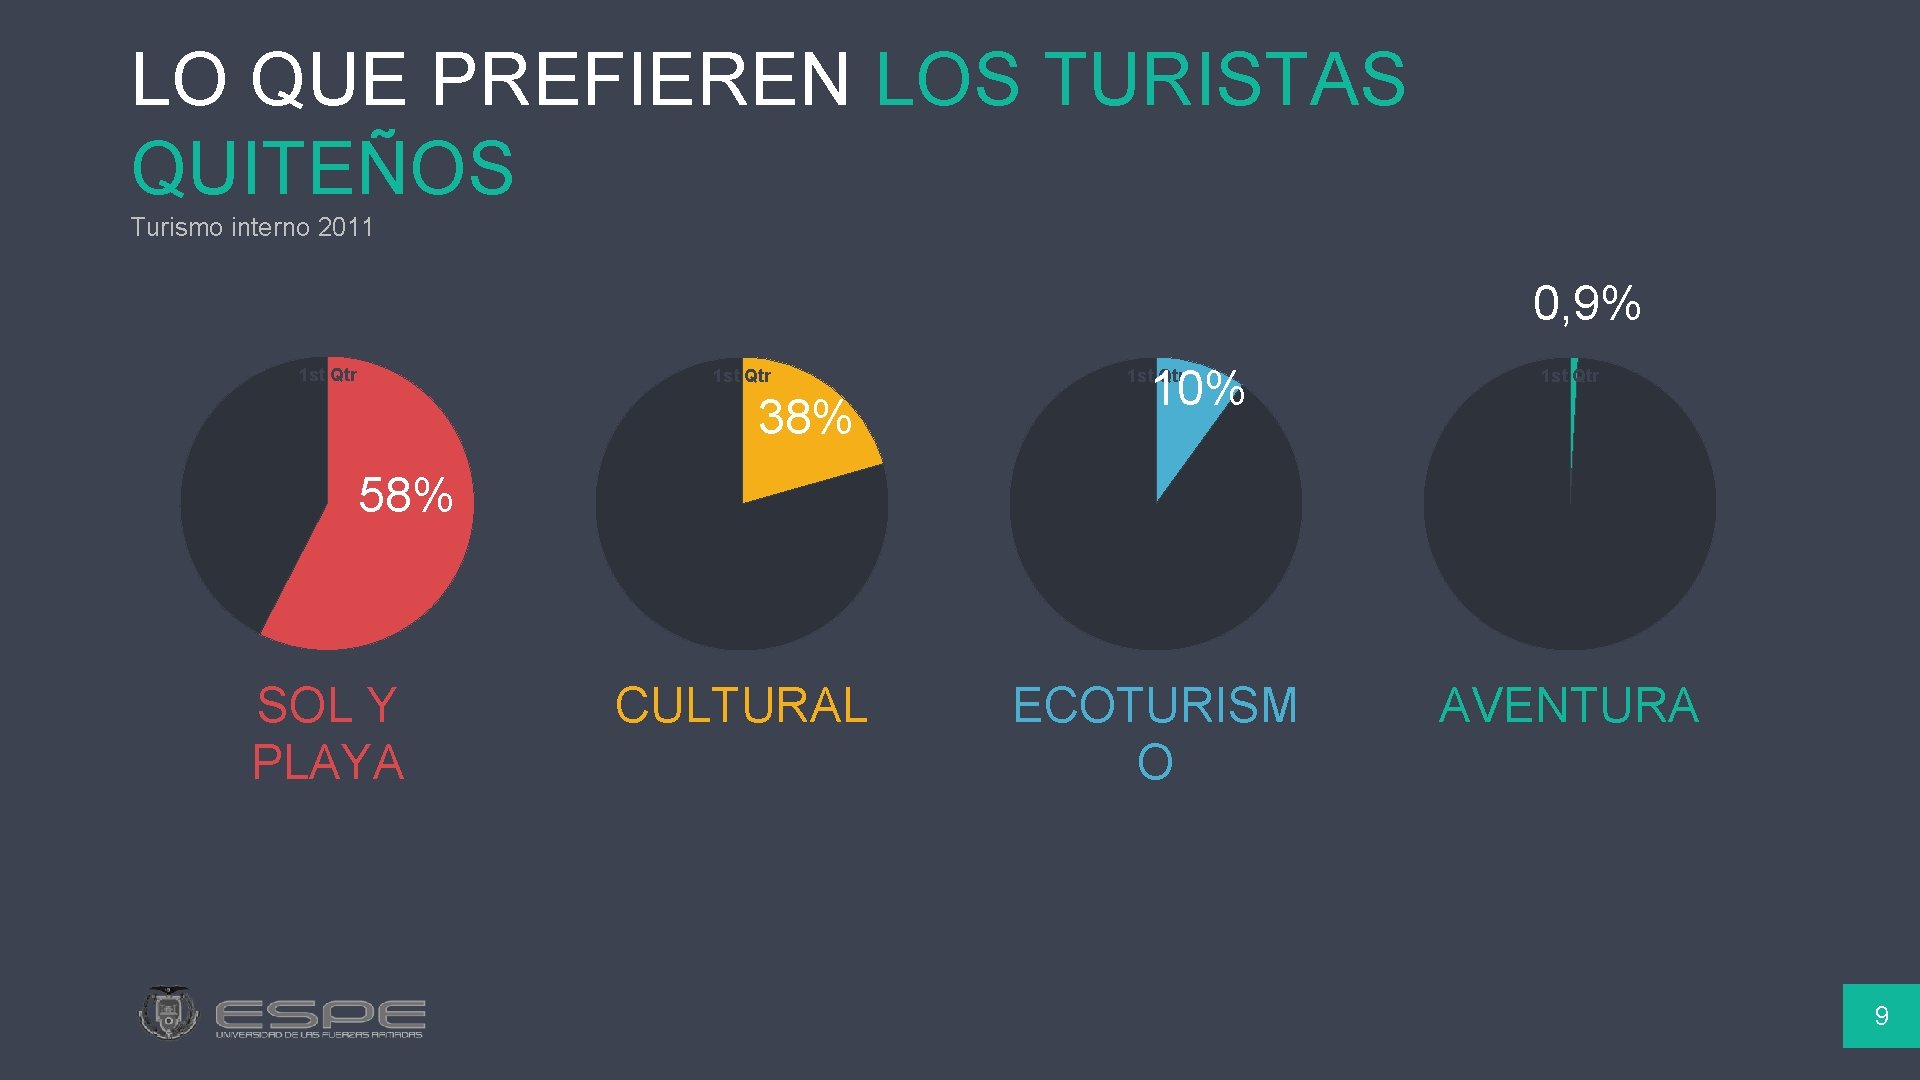 LO QUE PREFIEREN LOS TURISTAS QUITEÑOS Turismo interno 2011 0, 9% 1 st Qtr